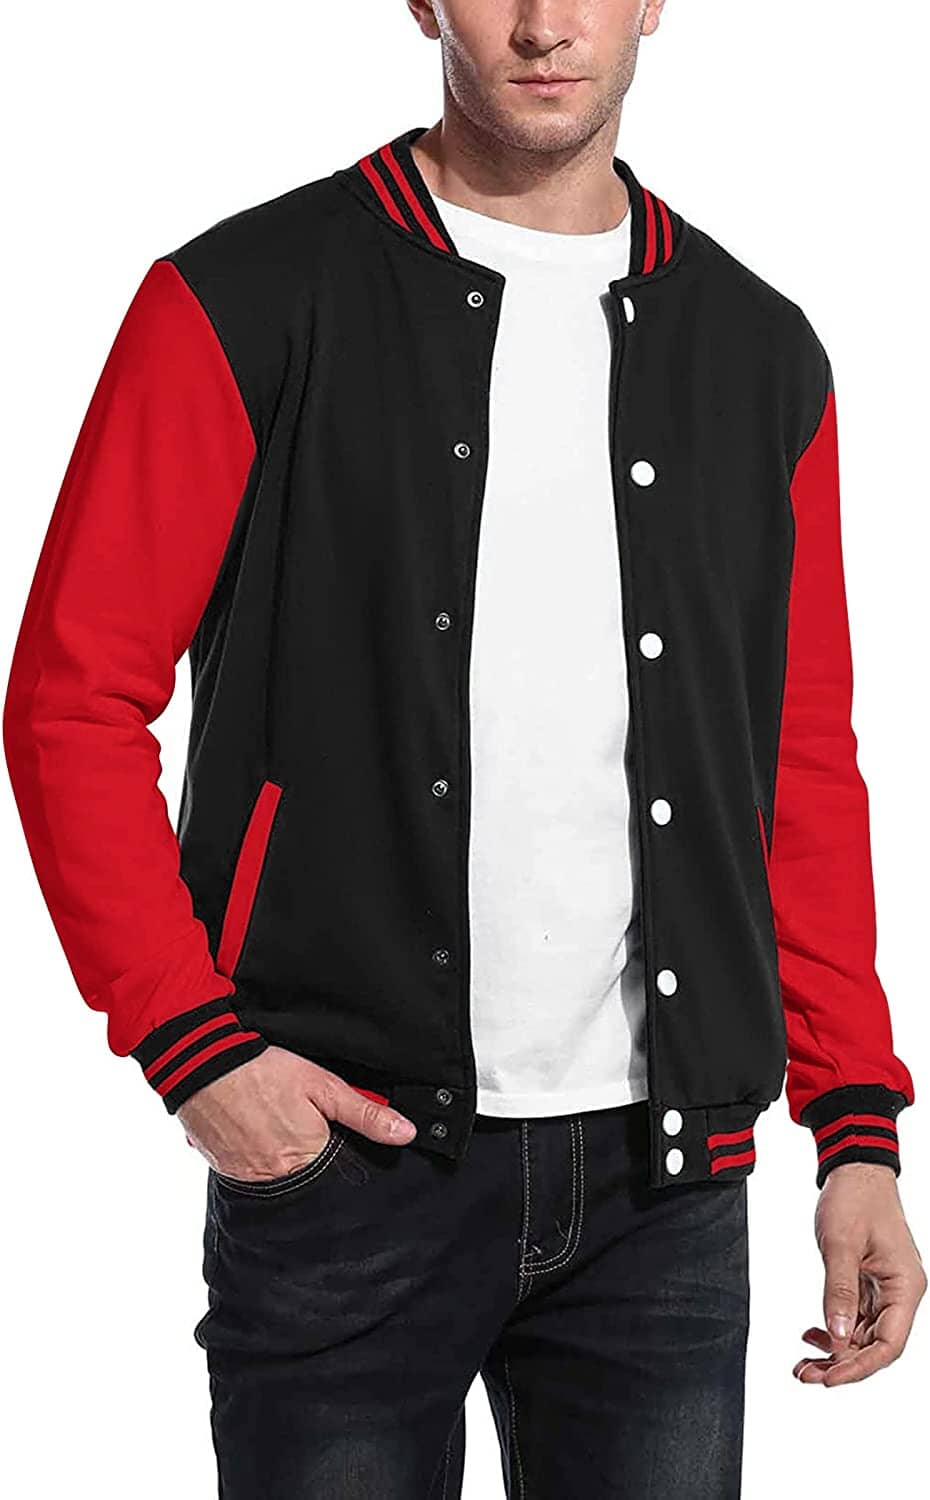 Shop Red & Black Best Bomber Jackets For Men 